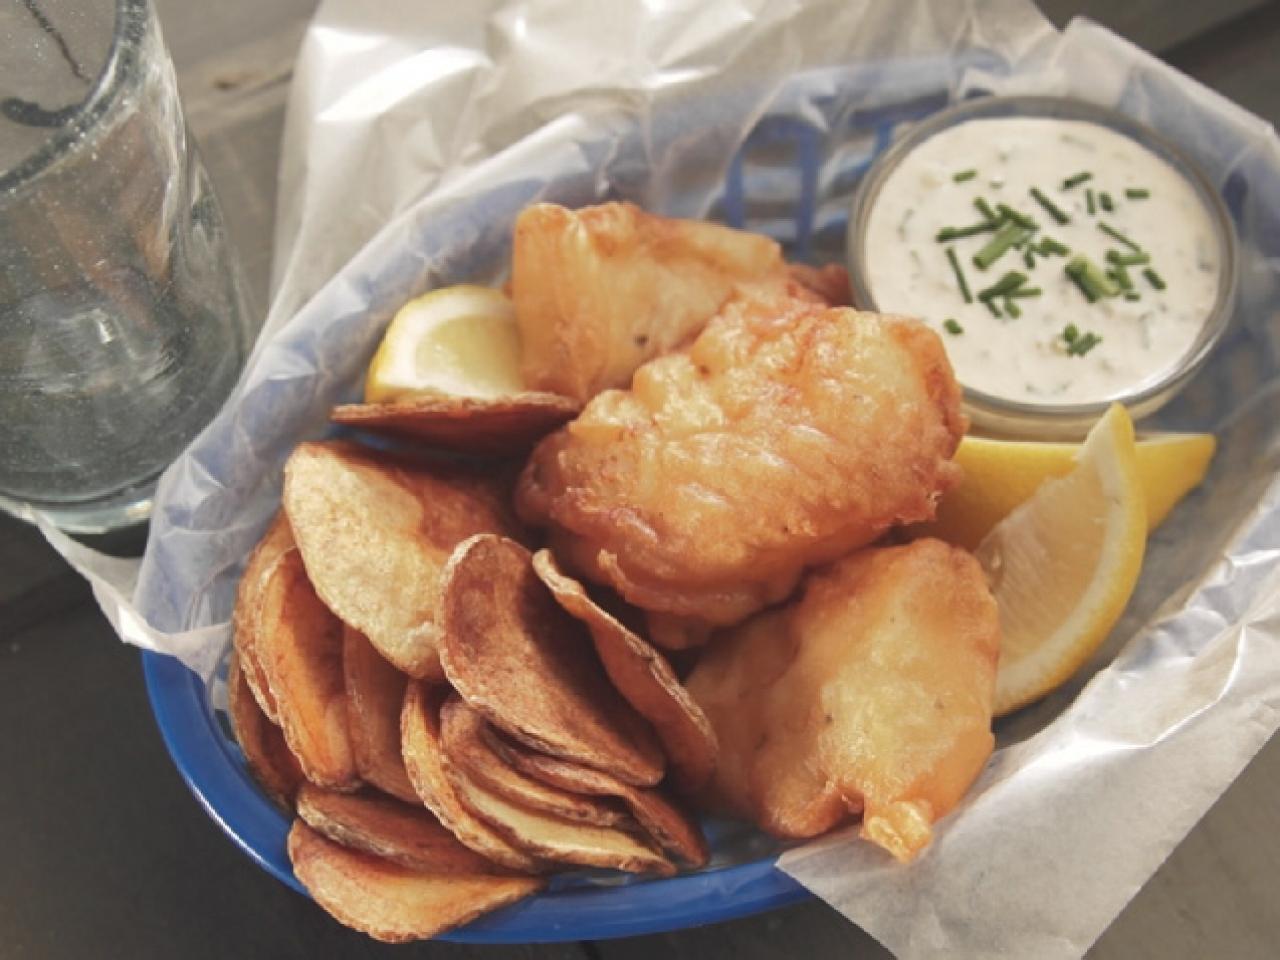 Homemade fish & chips